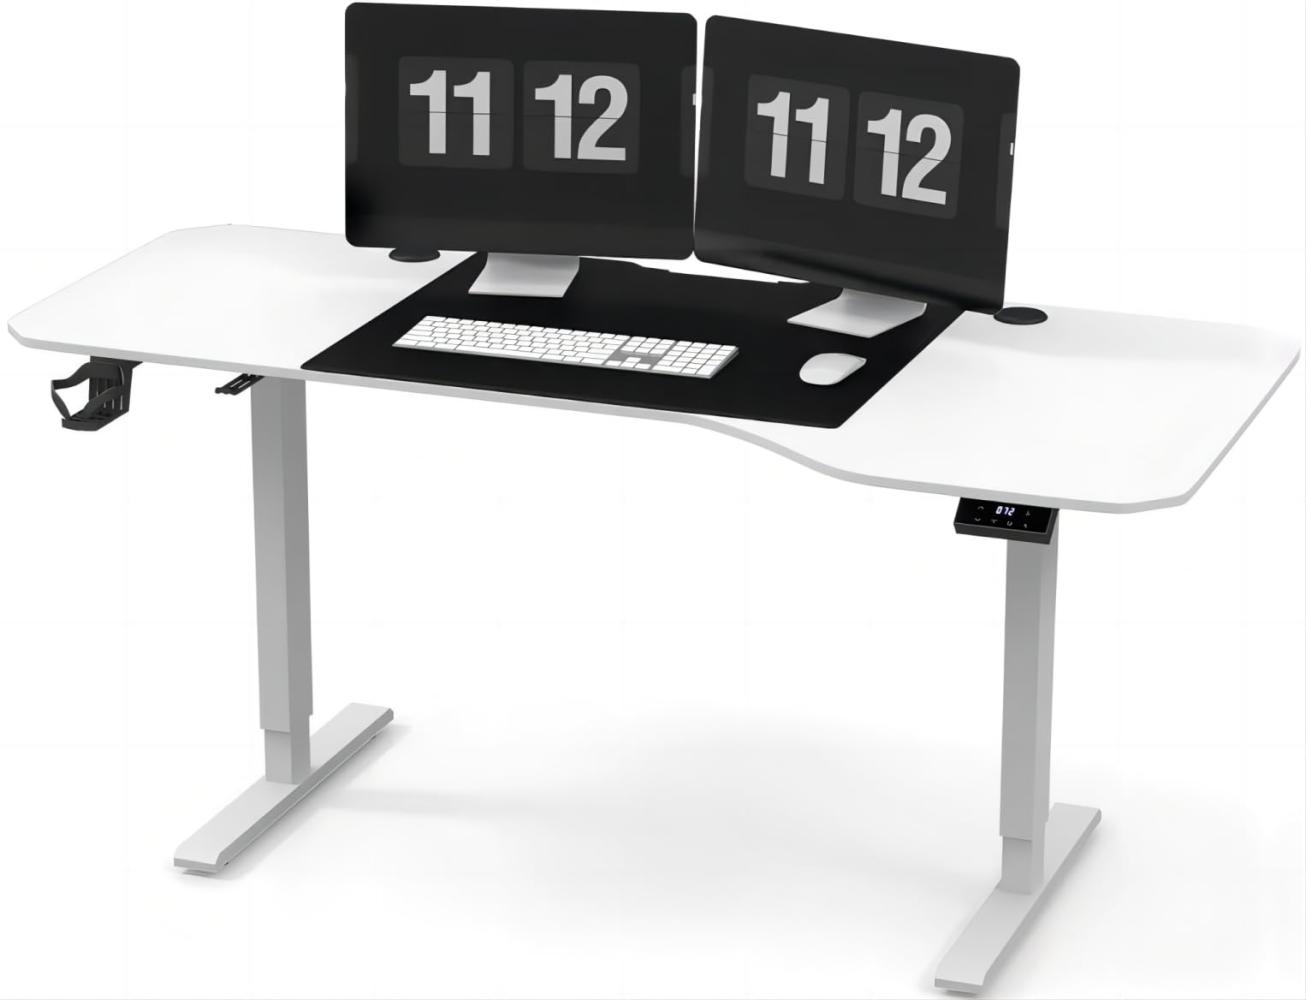 JUMMICO HöHenverstellbarer Schreibtisch 160 cm L-förmiger Schreibtisch Höhenverstellbar Elektrisch,Ergonomie Gaming Tisch(Weiß) Bild 1